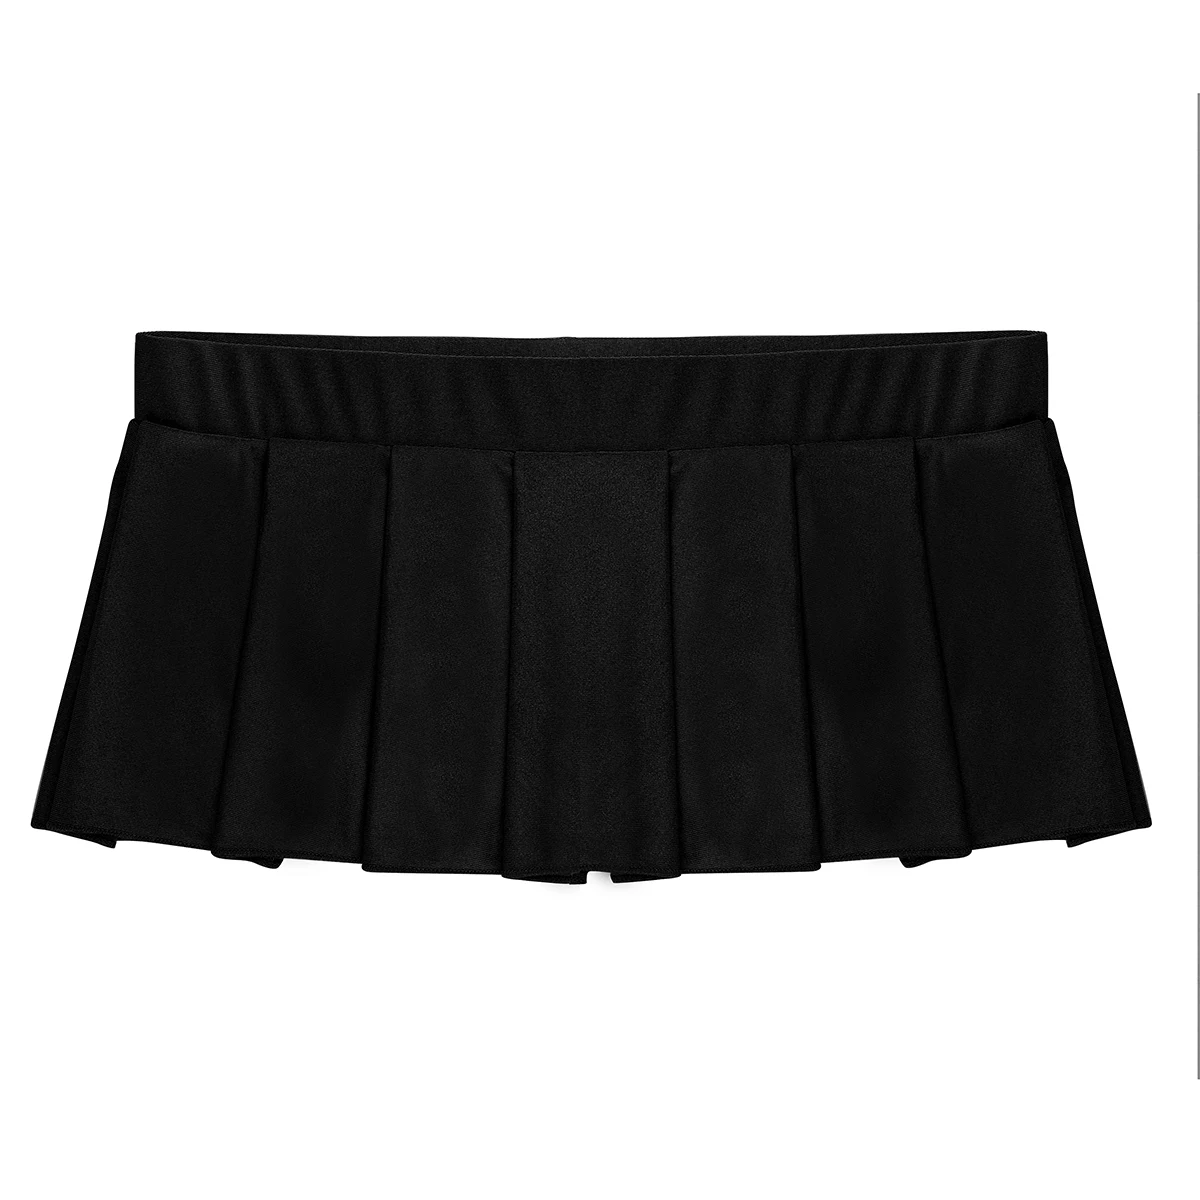 Женская Блестящая мини-юбка для Болельщицы, сексуальная школьная форма, плиссированная мини-юбка с низкой посадкой, женские вечерние Клубные костюмы, горячее ночное белье - Цвет: Black